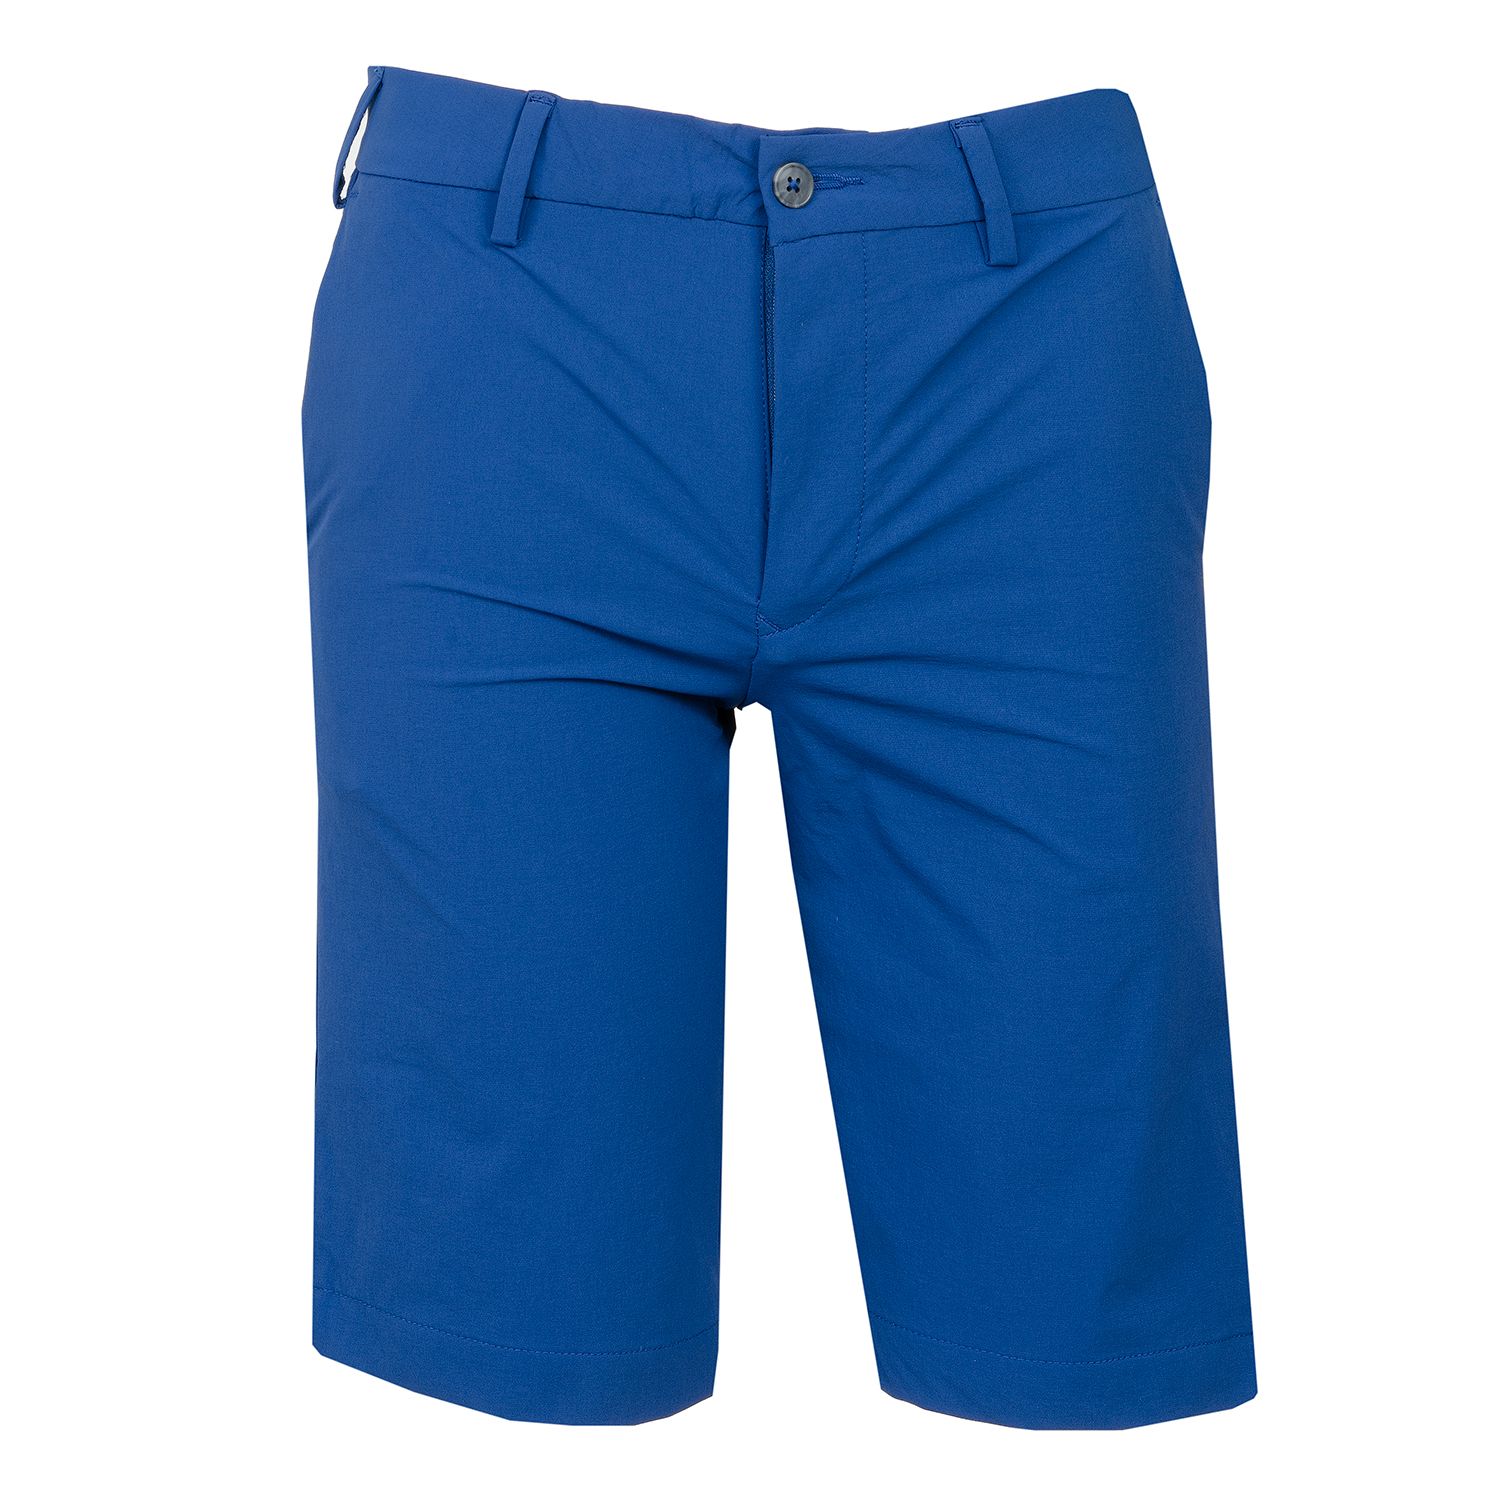 Junior Golf Shorts - Blue